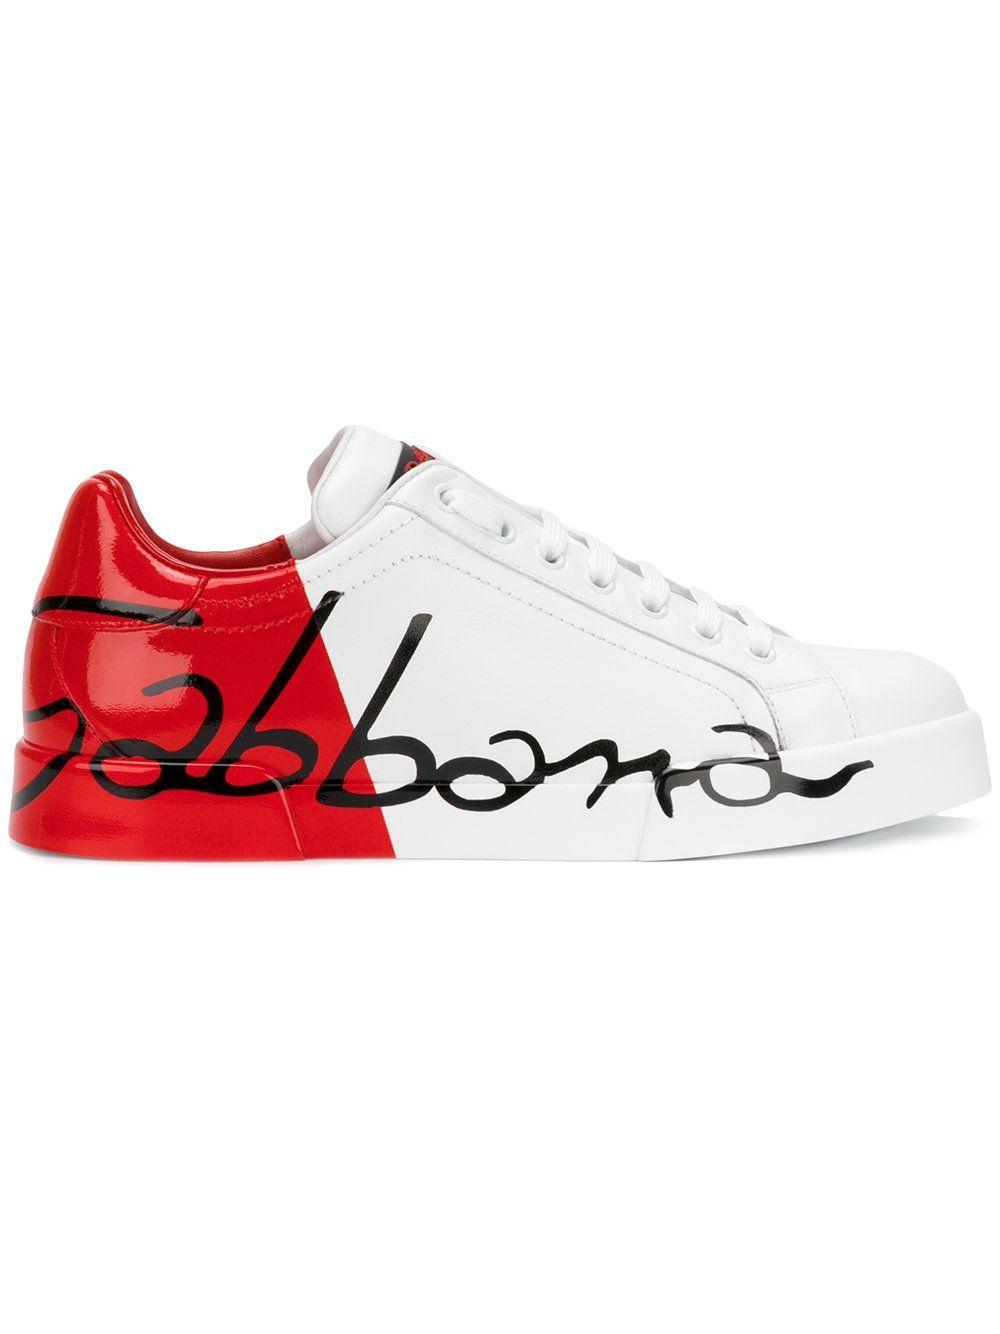 Shoe Red Logo - Dolce & Gabbana scrawled logo sneakers | MEN'S FOOTWEAR | Sneakers ...